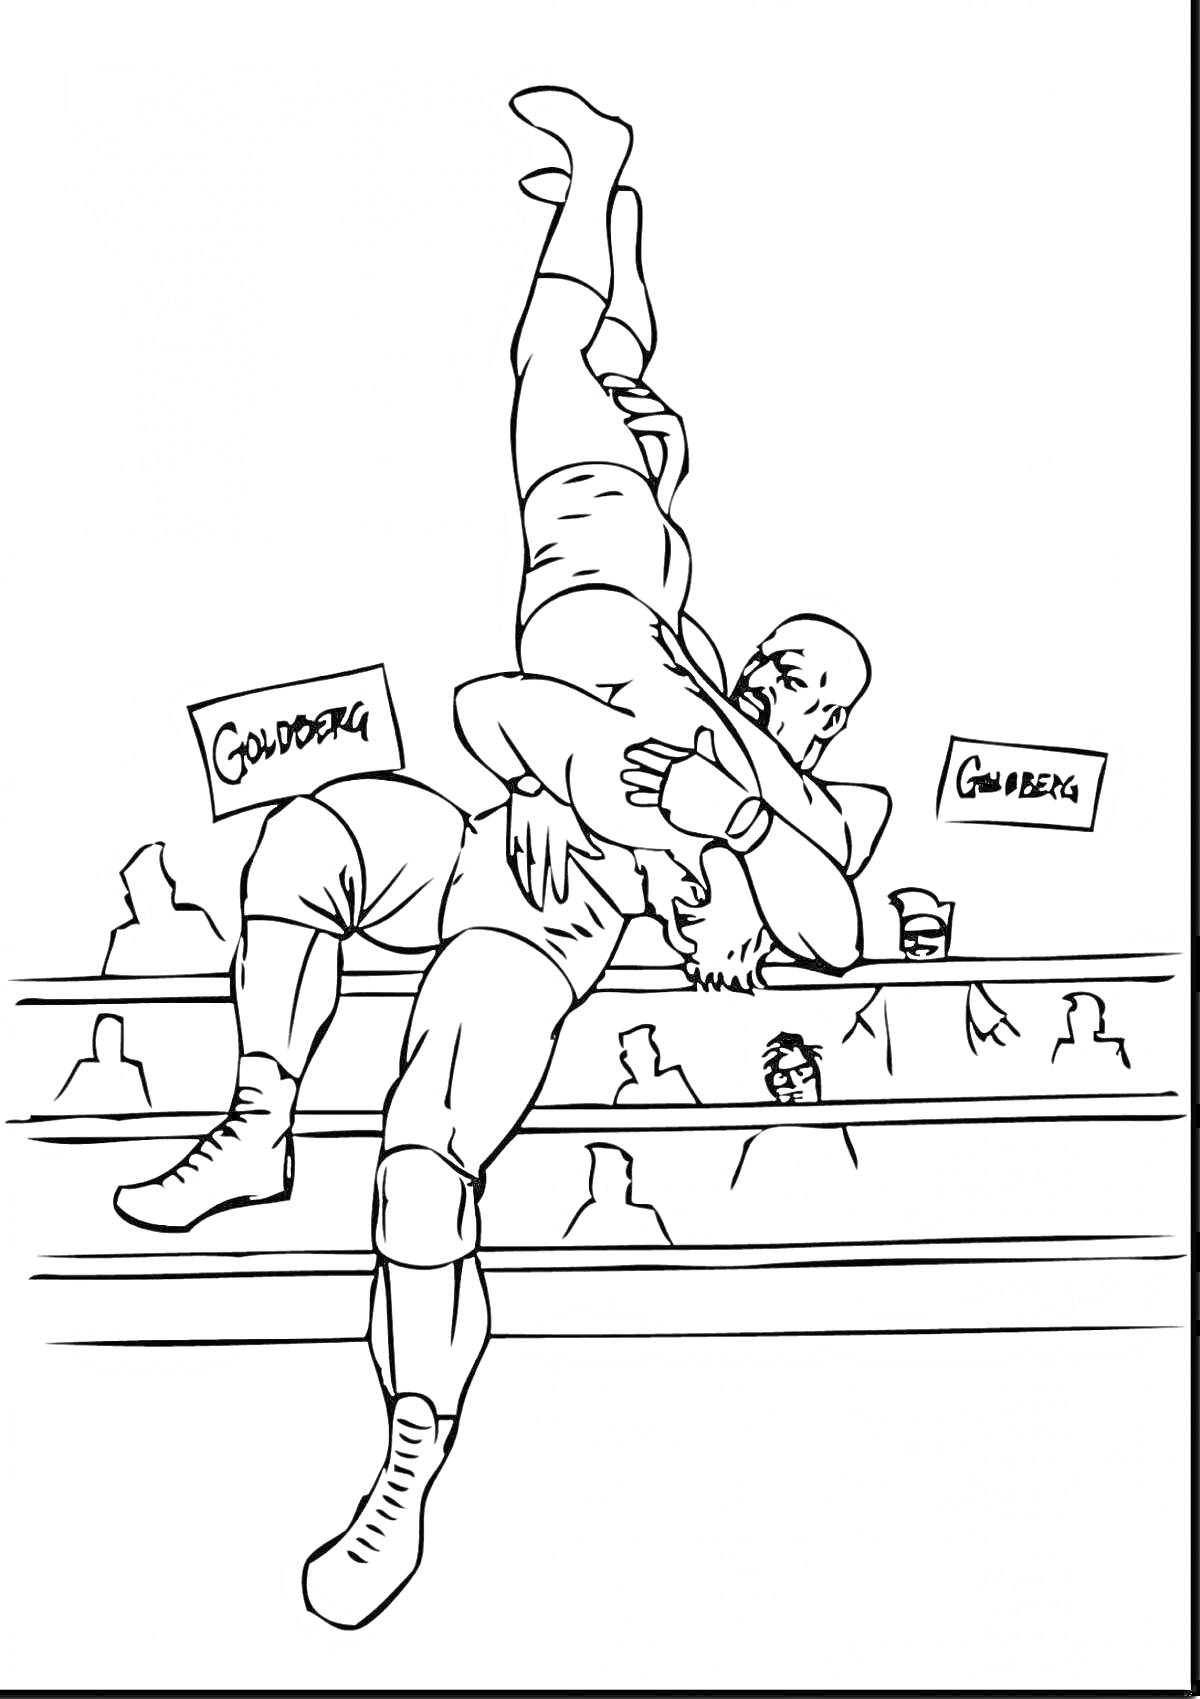 Раскраска два борца в ринге, один поднимает другого вверх, зрители на заднем плане, надписи 